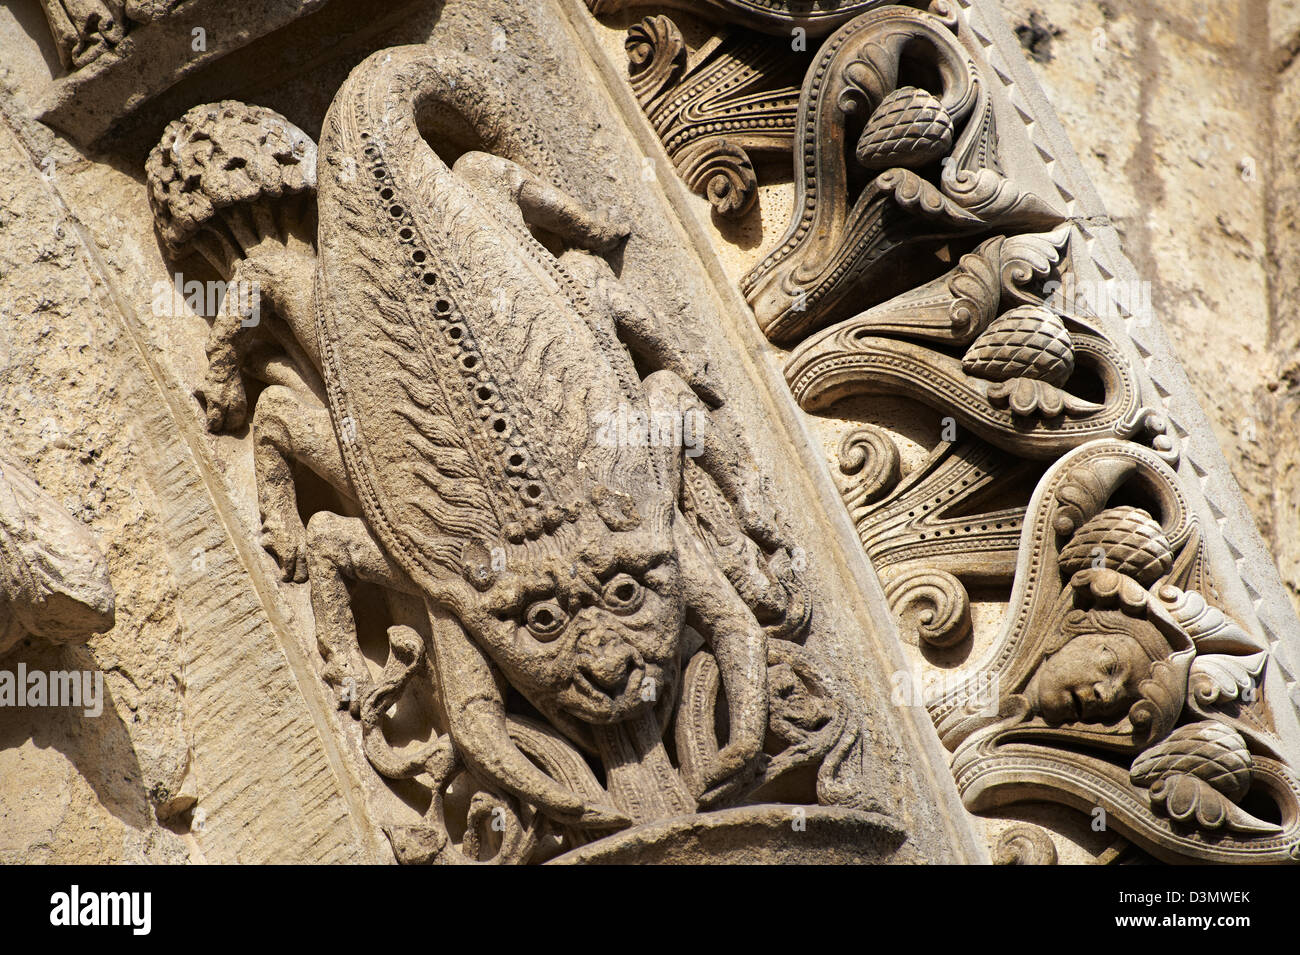 West-Fassade, links Portal Archivolten c. 1145. Kathedrale von Chartres, Frankreich. Gotische Skulptur Skorpion das Zeichen des Tierkreises, Stockfoto